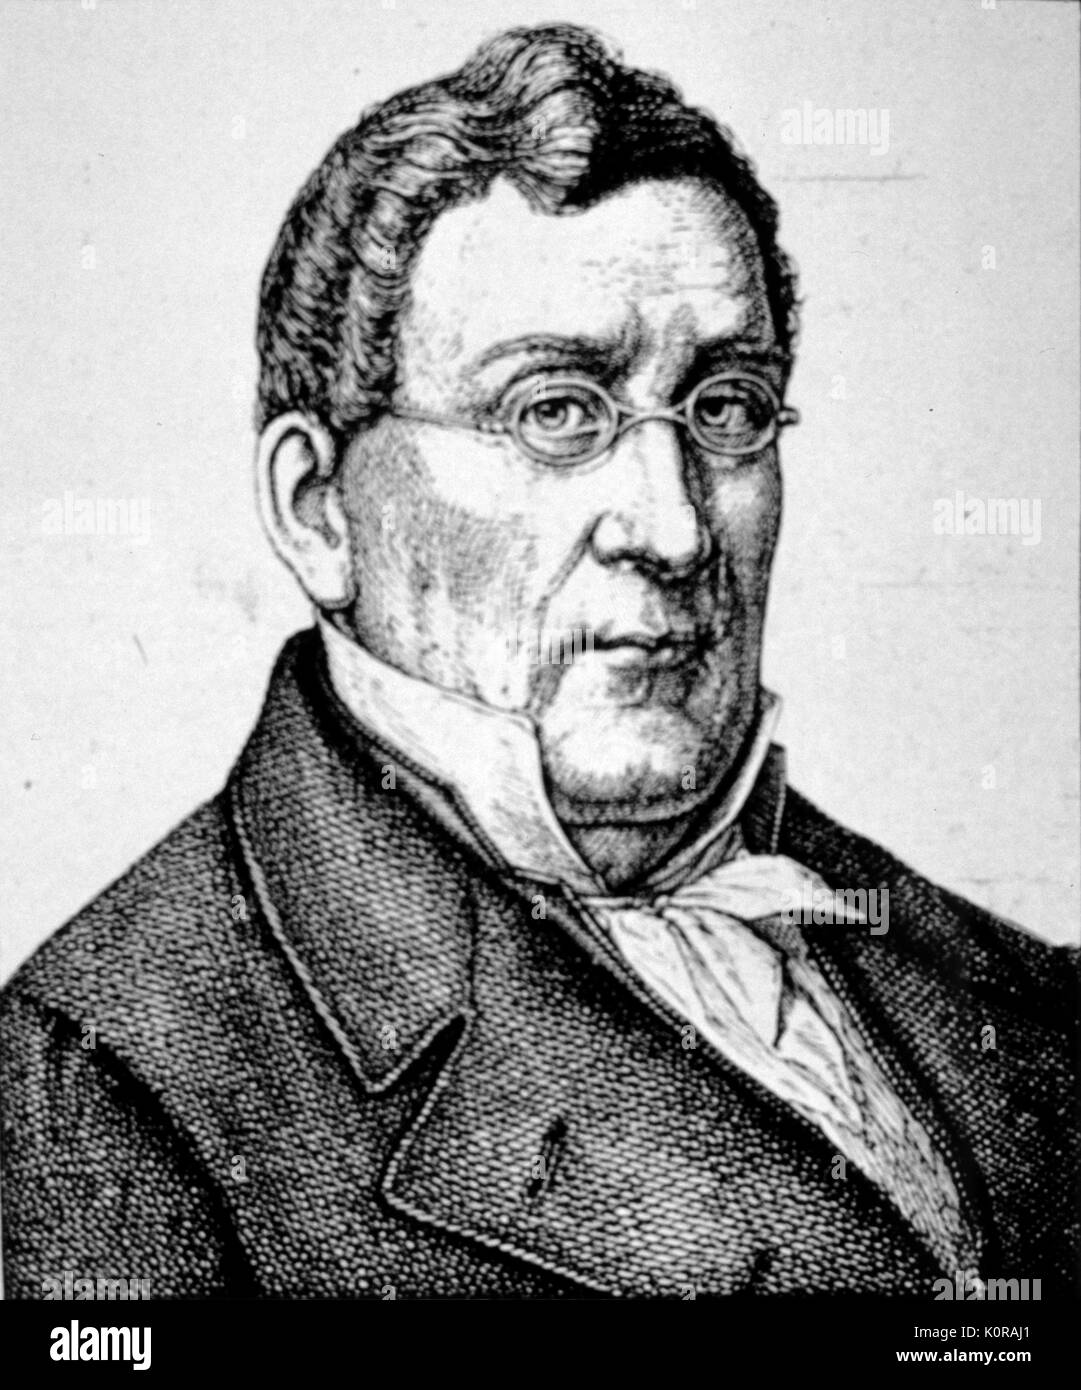 Louis Spohr, violoniste allemand, compositeur et chef d'orchestre, 1784-1859 Banque D'Images